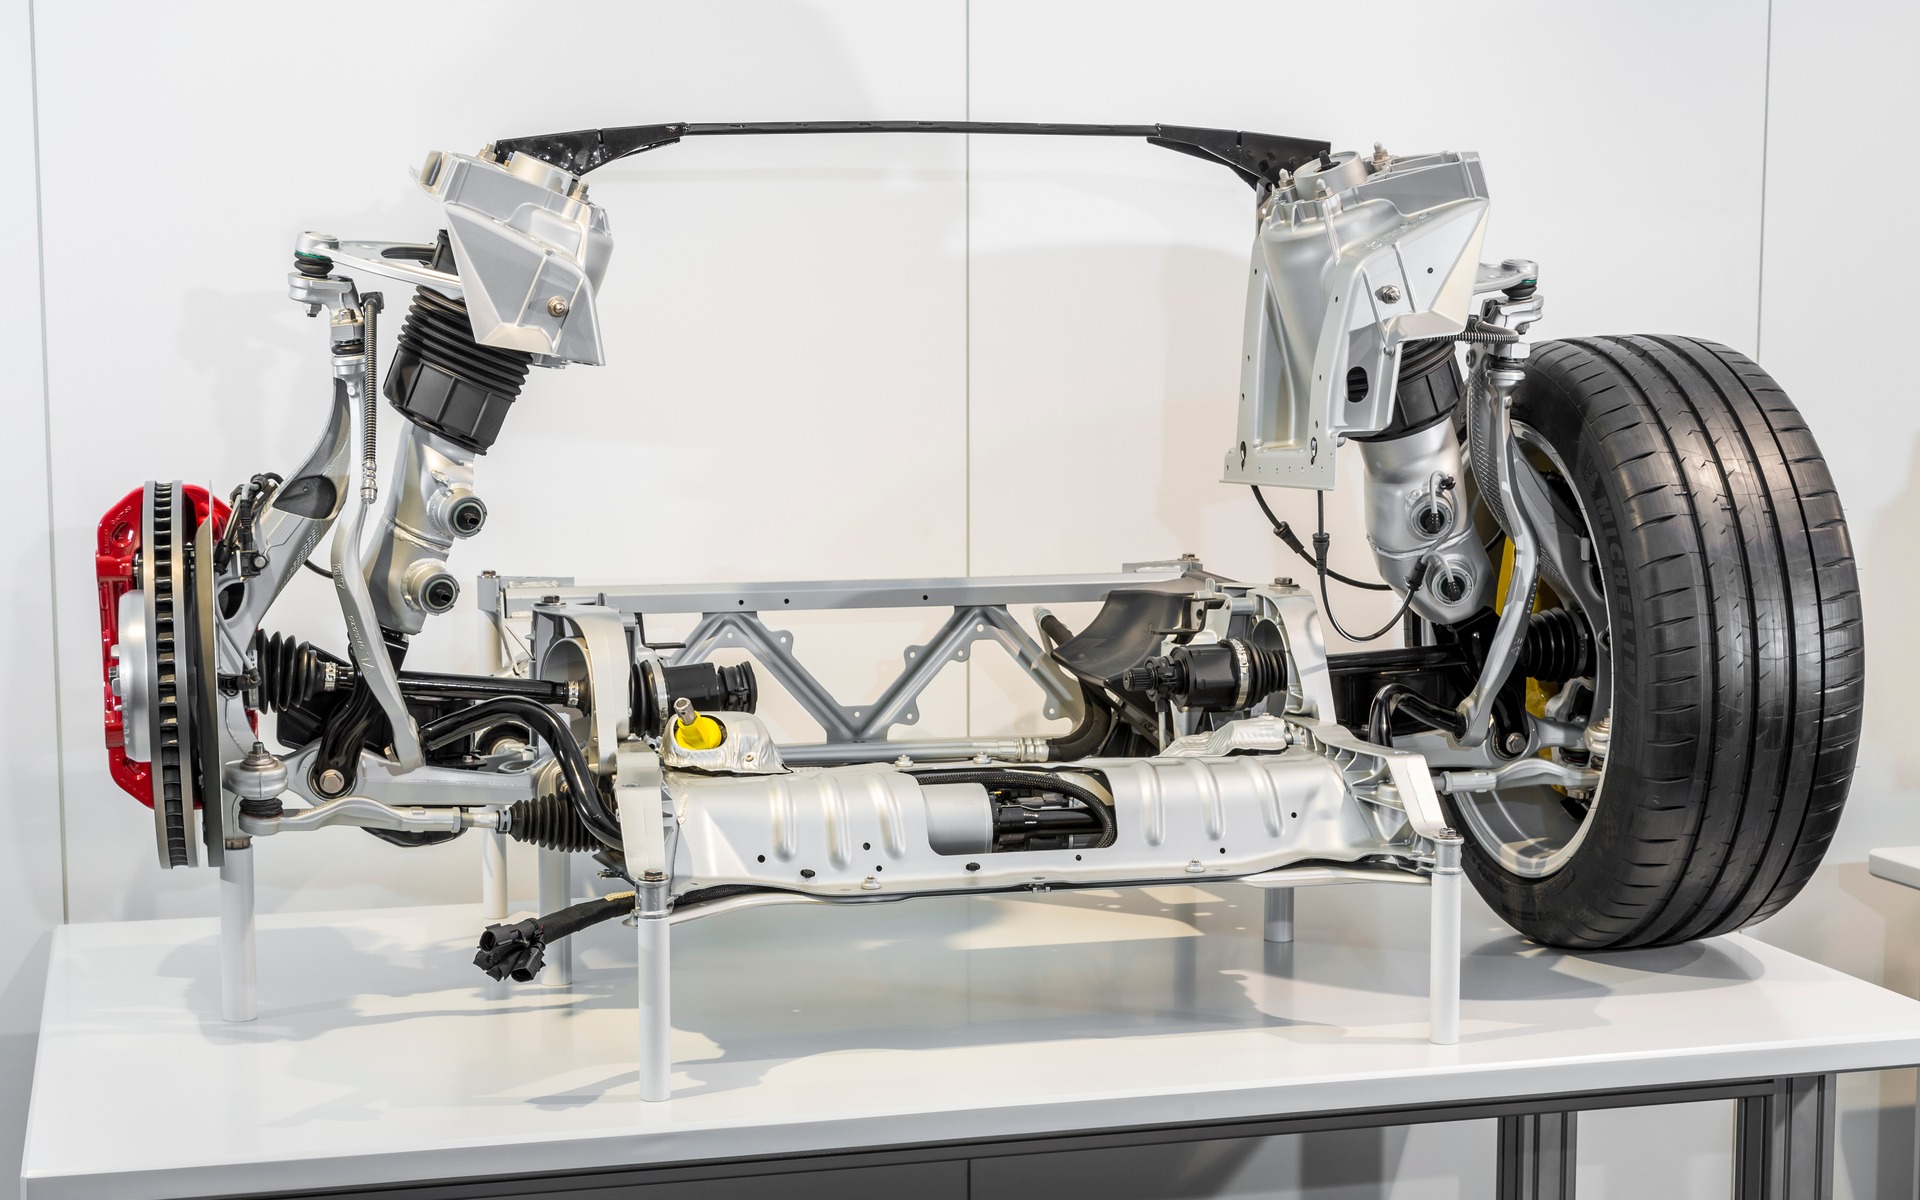 The 2017 Porsche Panamera's suspension